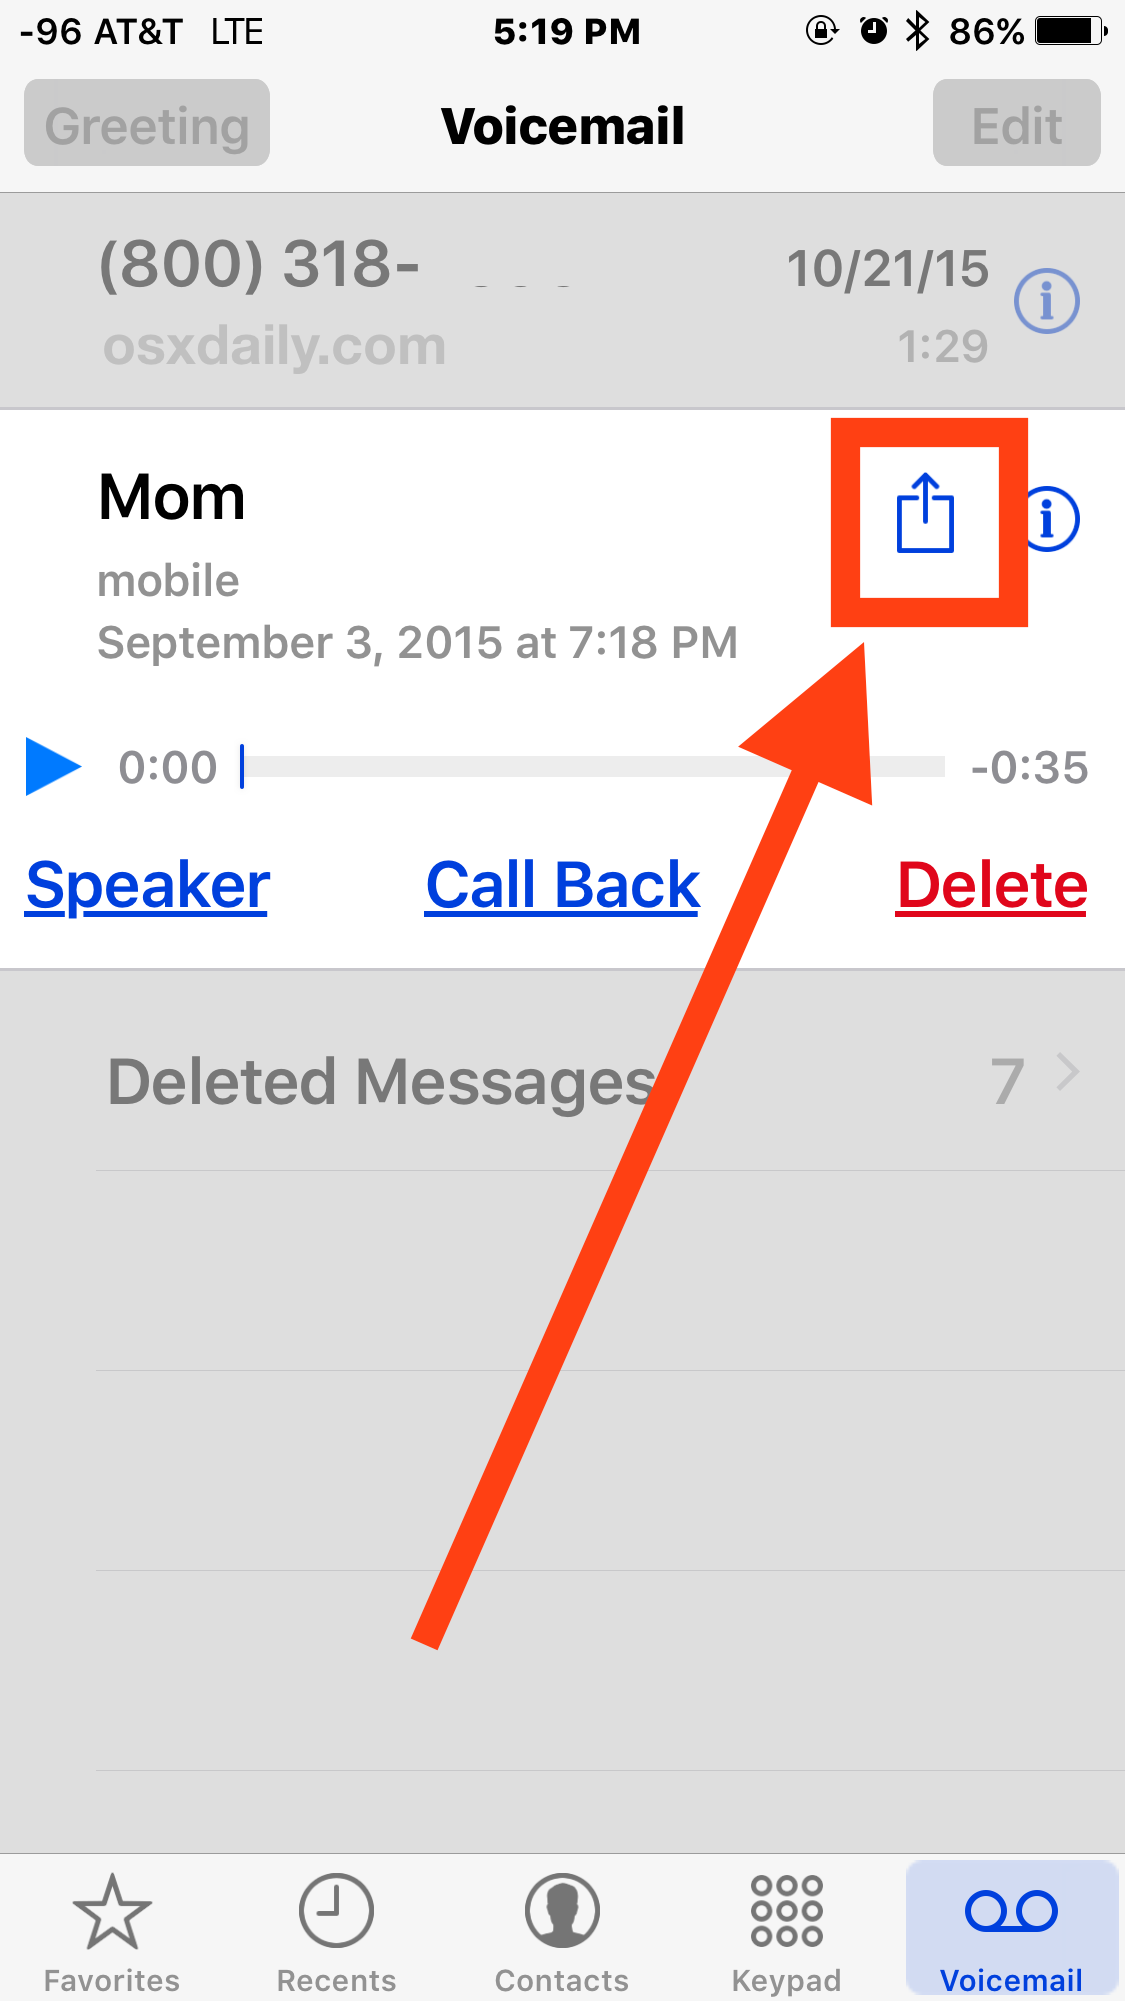 点击共享按钮将语音邮件保存到手机” />    </p>
<ul>
<li>选择“笔记”将语音邮件保存到存储在 iPhone 上的笔记中，如果您选择 iCloud 笔记，它将通过其笔记应用程序自动与其他共享的 iCloud 设备共享</li>
<li>选择“语音备忘录”将语音邮件保存到语音备忘录应用程序，除非您稍后共享，否则这将仅保留在 iPhone 上</li>
</ul>
<p>    <img decoding=